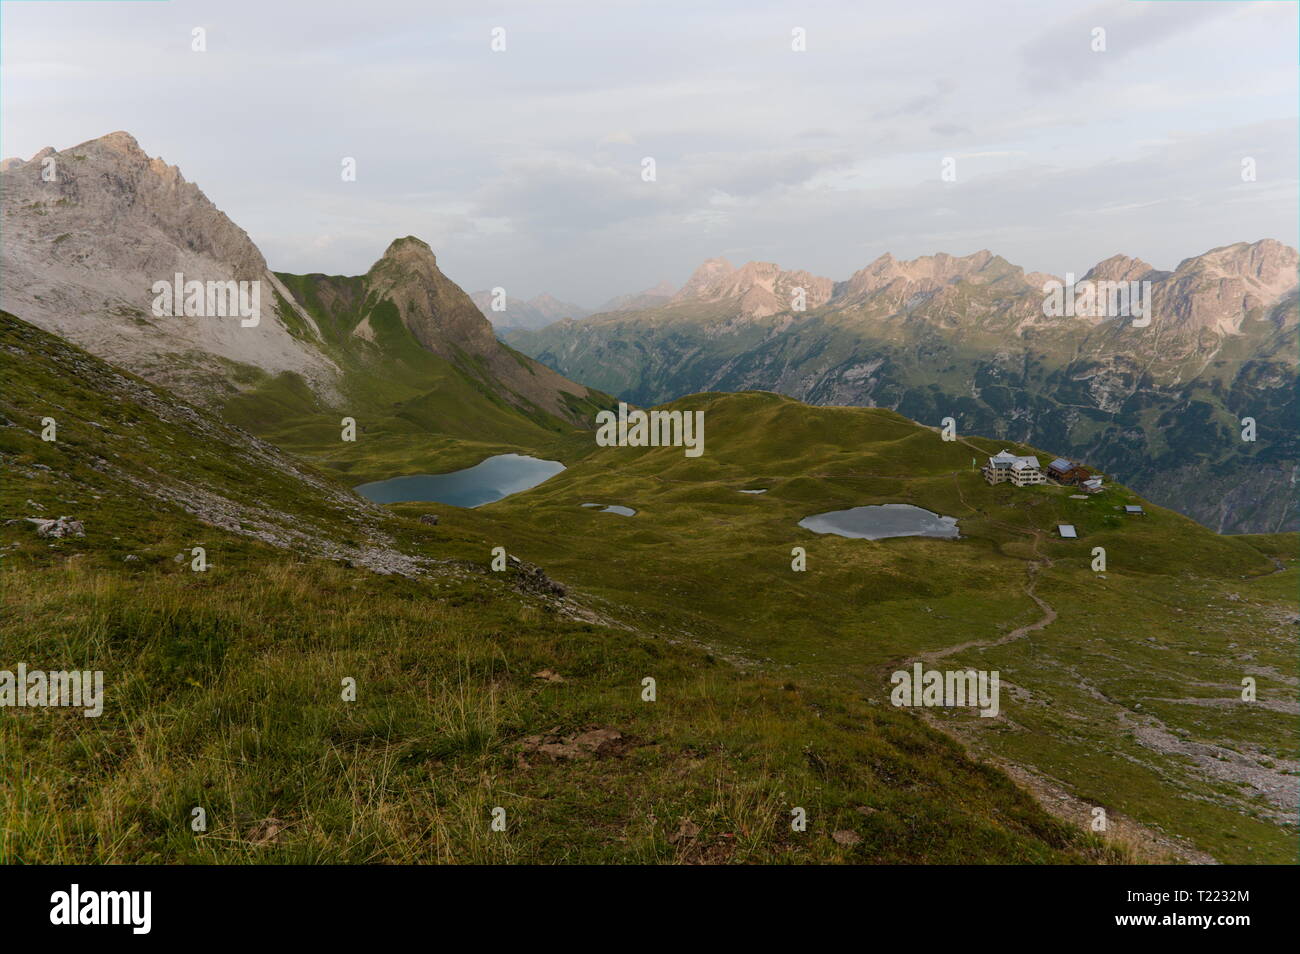 Berghütte. Einsame Hütte mit einer Bergkette im Hintergrund, Deutschland Stockfoto